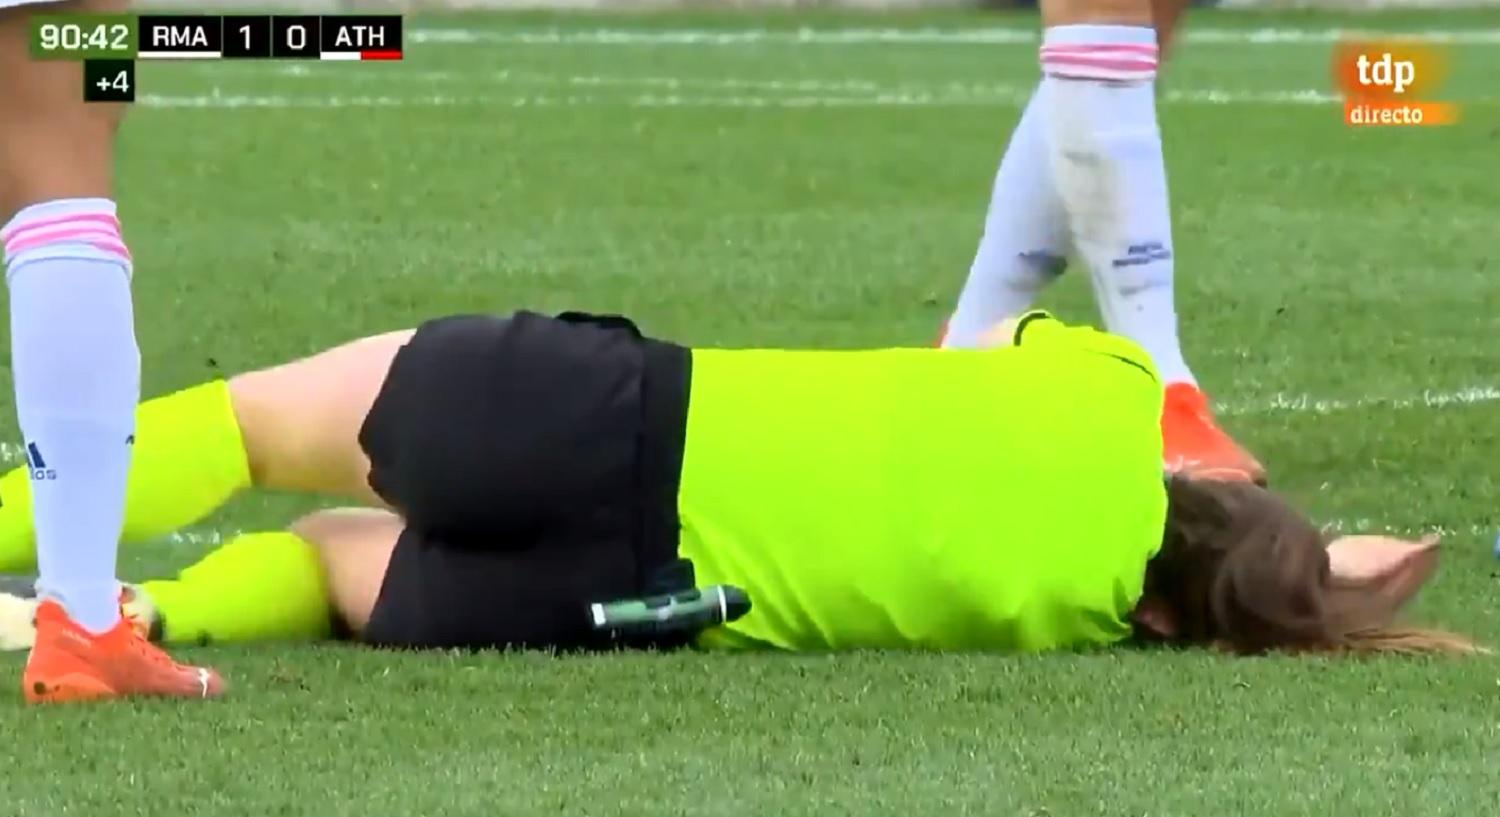 La árbitra Sara Fernández tendida en el suelo, tras el pelotazo. Fuente: Teledeporte.